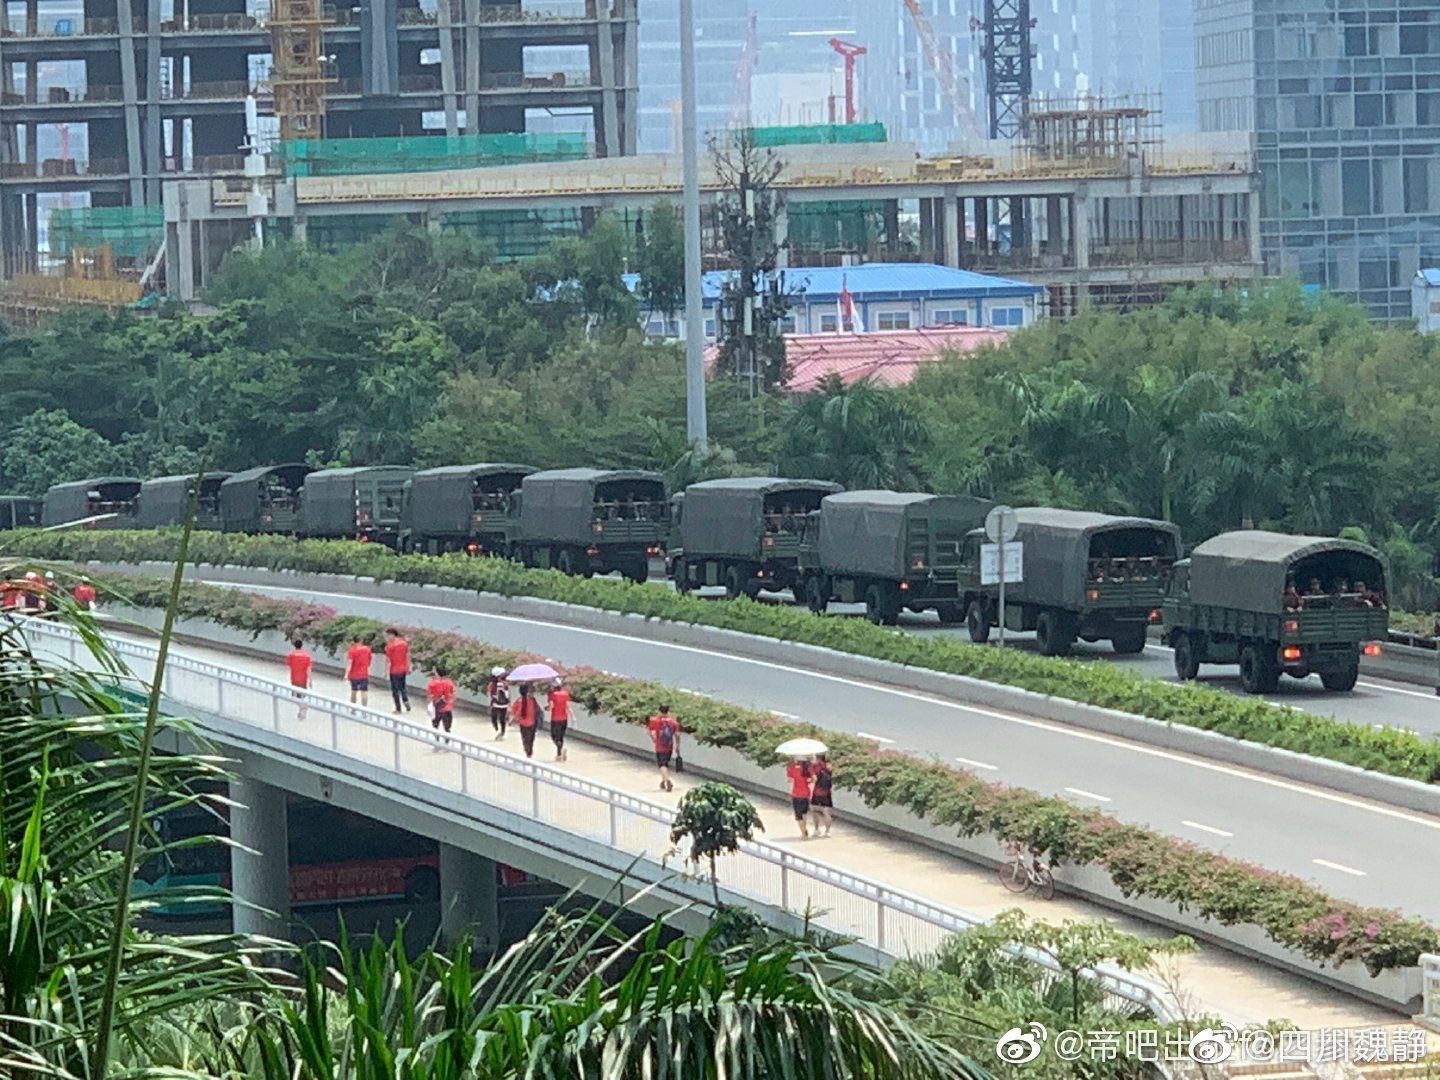 據網友爆料A深圳灣口岸出現大批武警車輛C圖片來源G微博